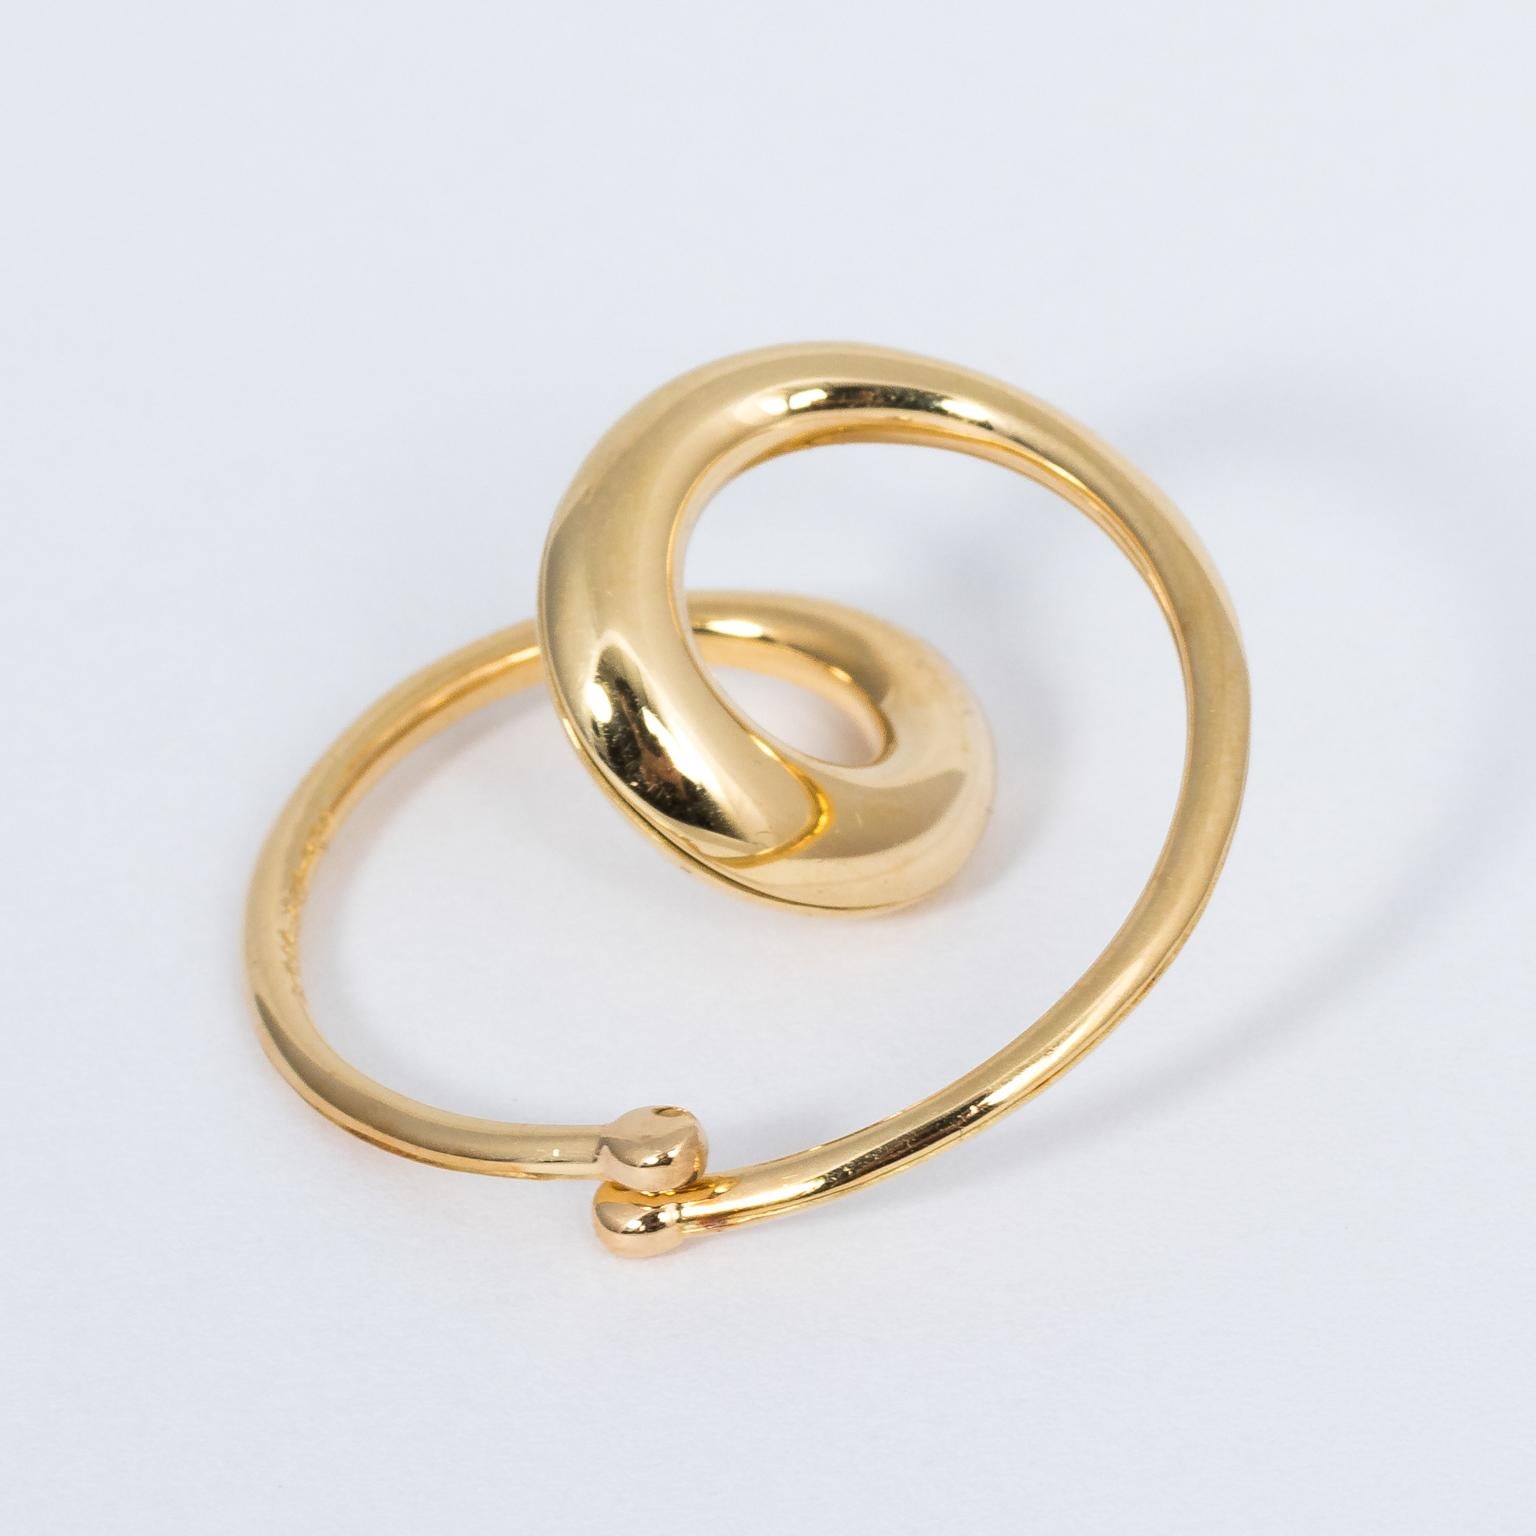 Michael Good 18 Karat Yellow Gold Swirl Heart Clip-On Earrings Non-Pierced 2